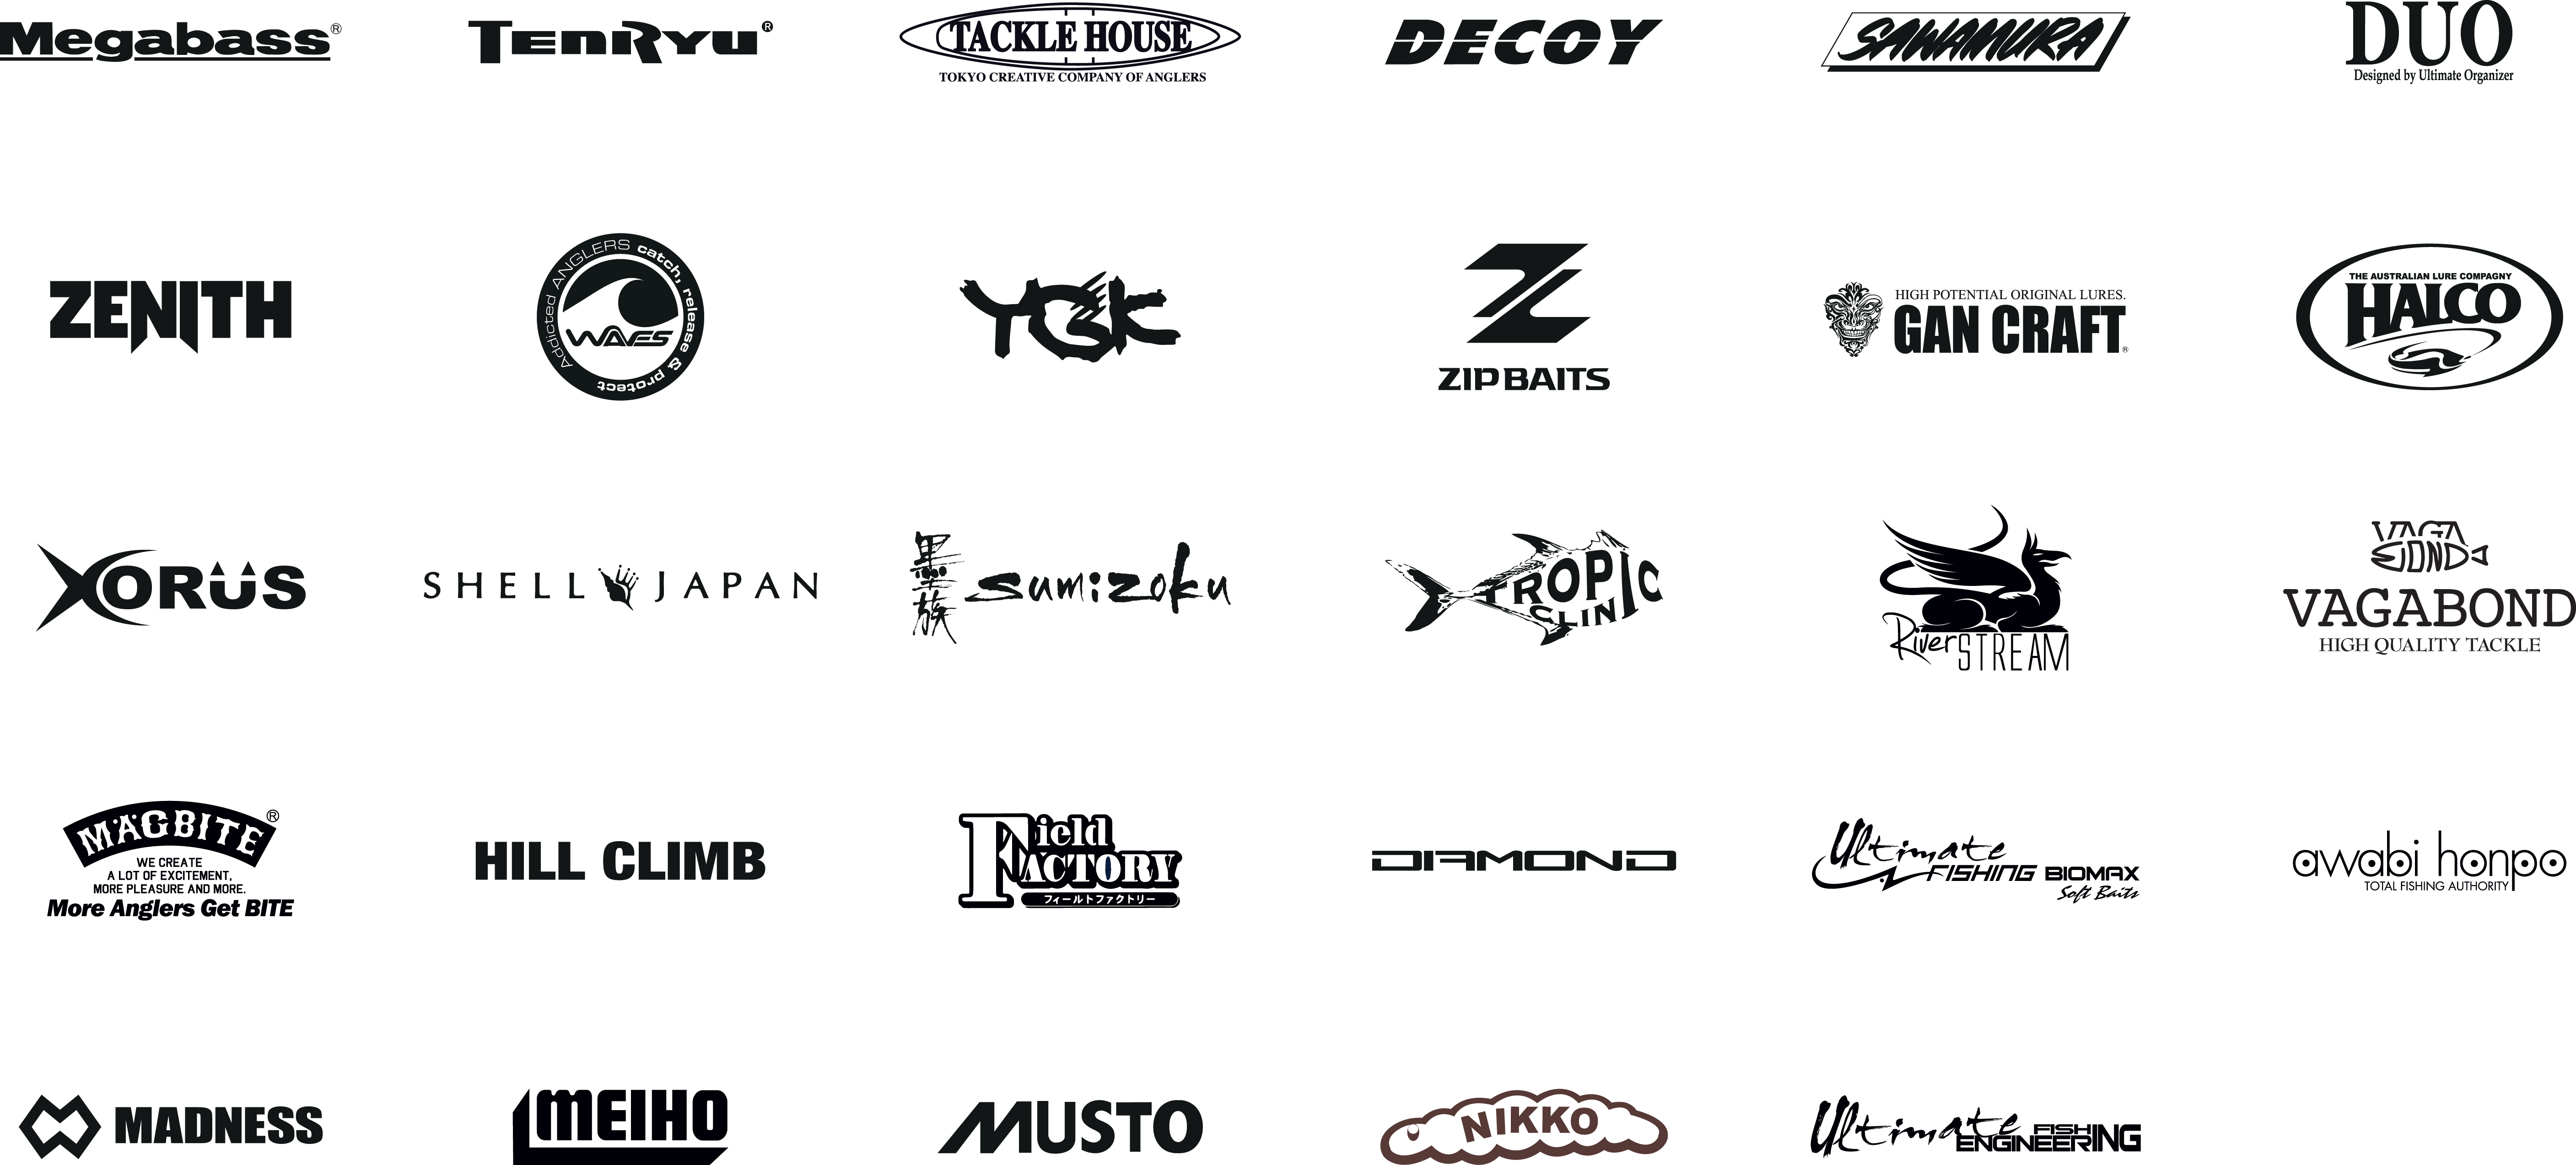 logos partenaires